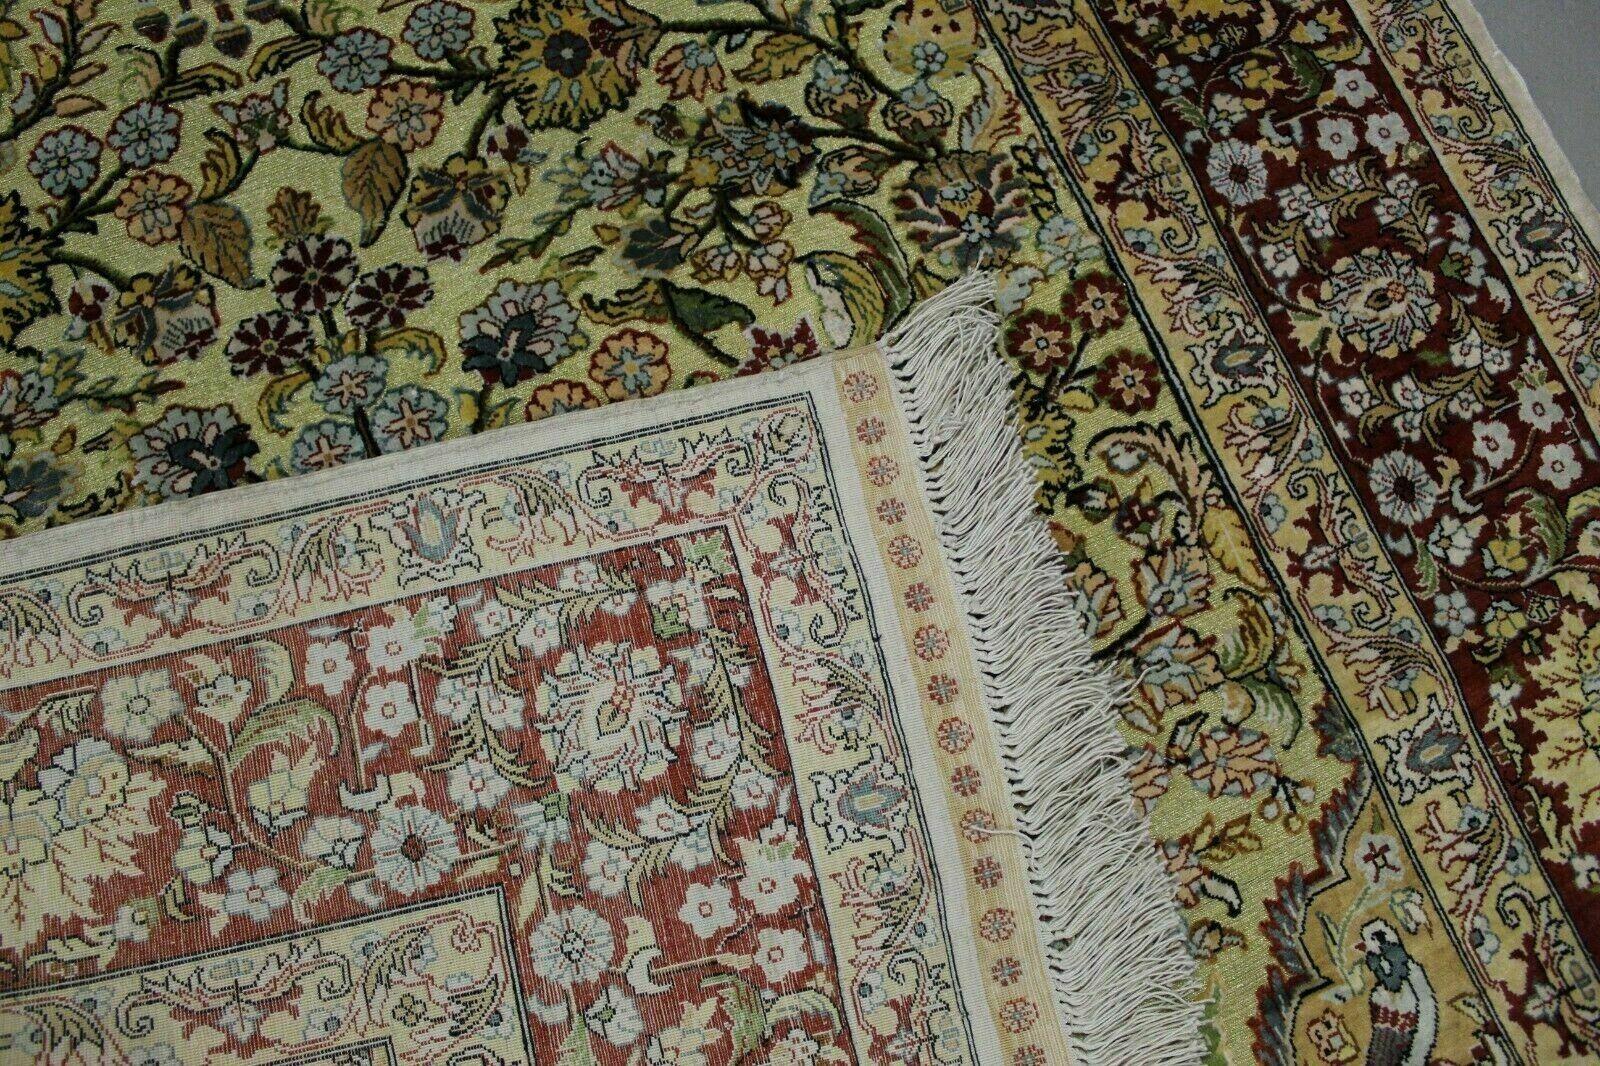 Verschönern Sie Ihren Wohnraum mit diesem handgefertigten türkischen Hereke-Seidenteppich im Vintage-Stil, einem wahren Meisterwerk aus den 1950er Jahren.

Wesentliche Merkmale:

Zustand: Dieser alte türkische Hereke-Seidenteppich ist in einem